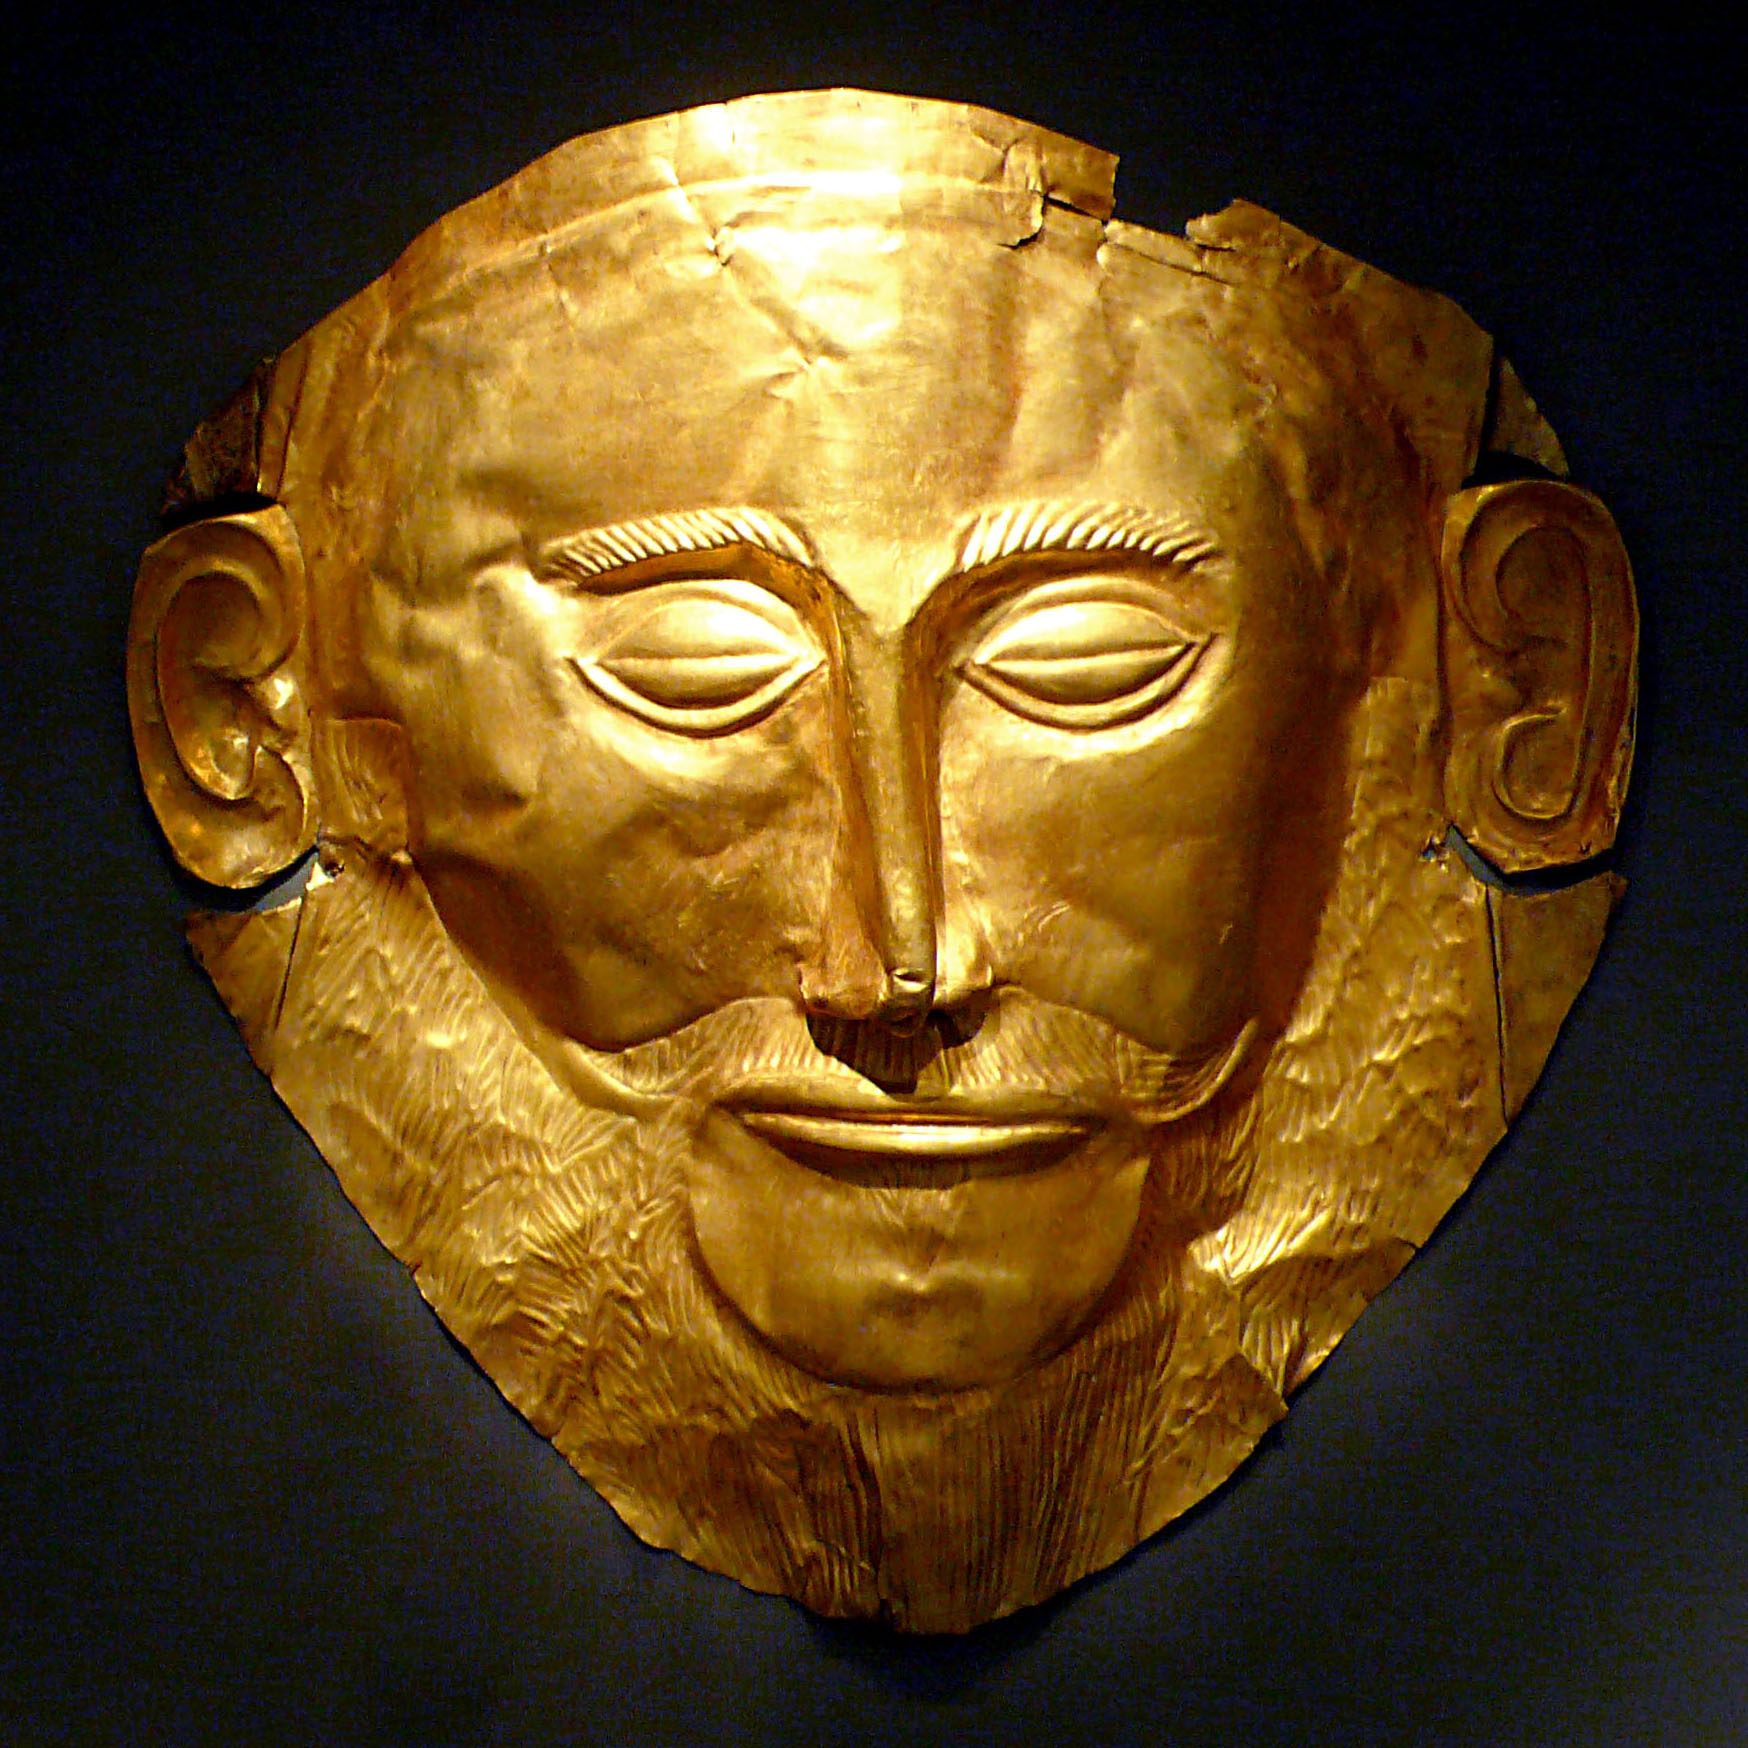 Goldmaske des Agamemnon by Unbekannter Künstler - 16. Jh. v. Chr. - 17 x 25 cm Archäologisches Nationalmuseum, Athen